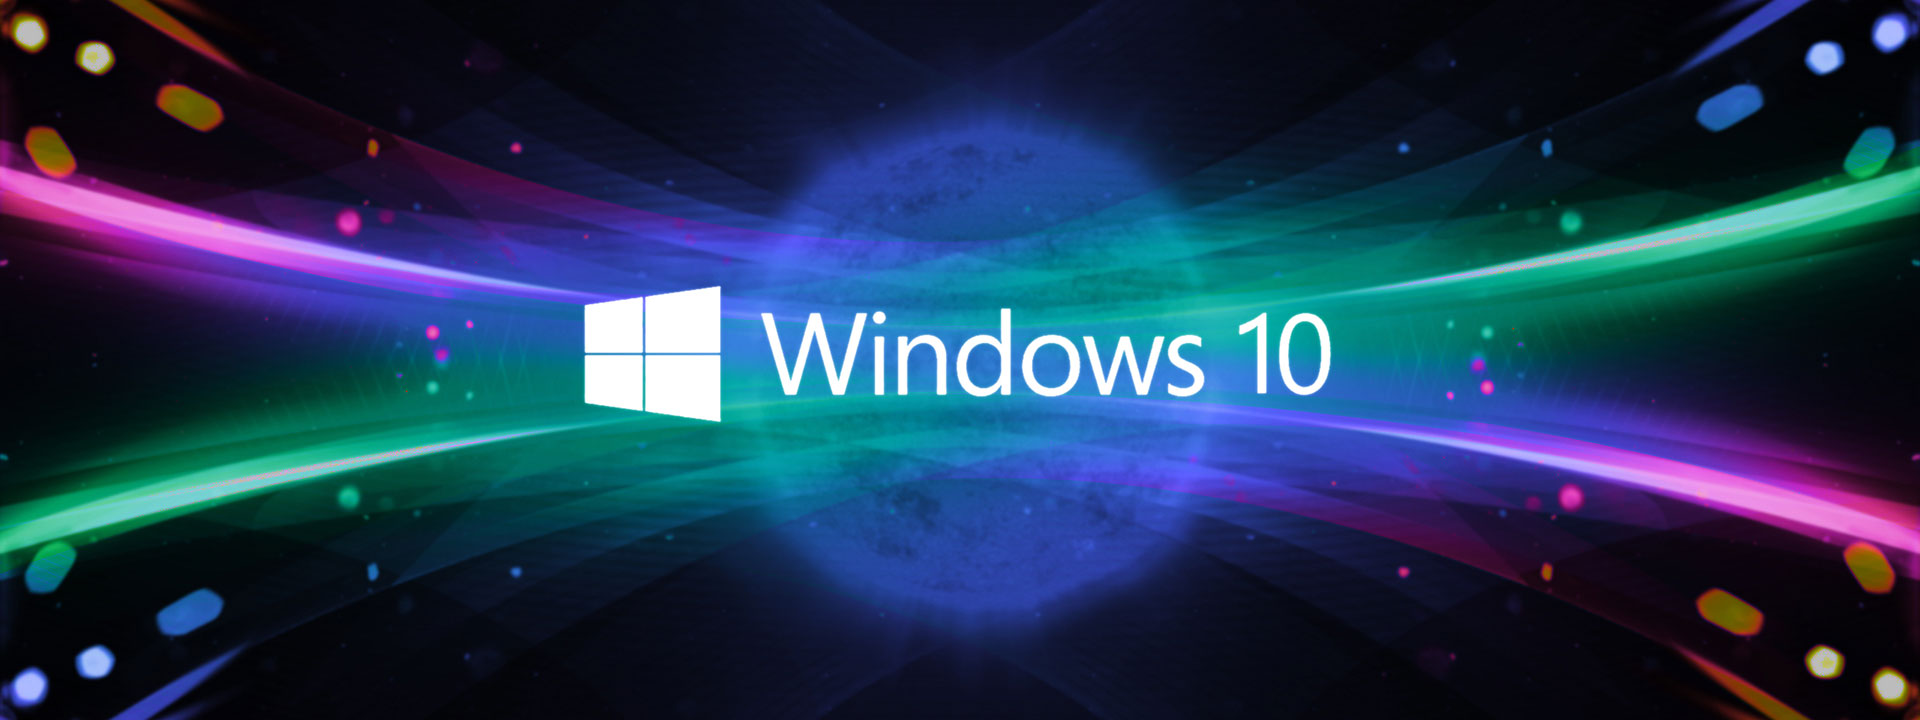 Windows 10 cập nhật tháng 5, 2018: Với Windows 10 cập nhật tháng 5, 2018, bạn sẽ có nhiều tính năng mới hơn để giúp cho việc sử dụng máy tính của bạn trở nên thú vị hơn bao giờ hết. Hãy cập nhật ngay để trải nghiệm những tính năng đang chờ đón bạn.